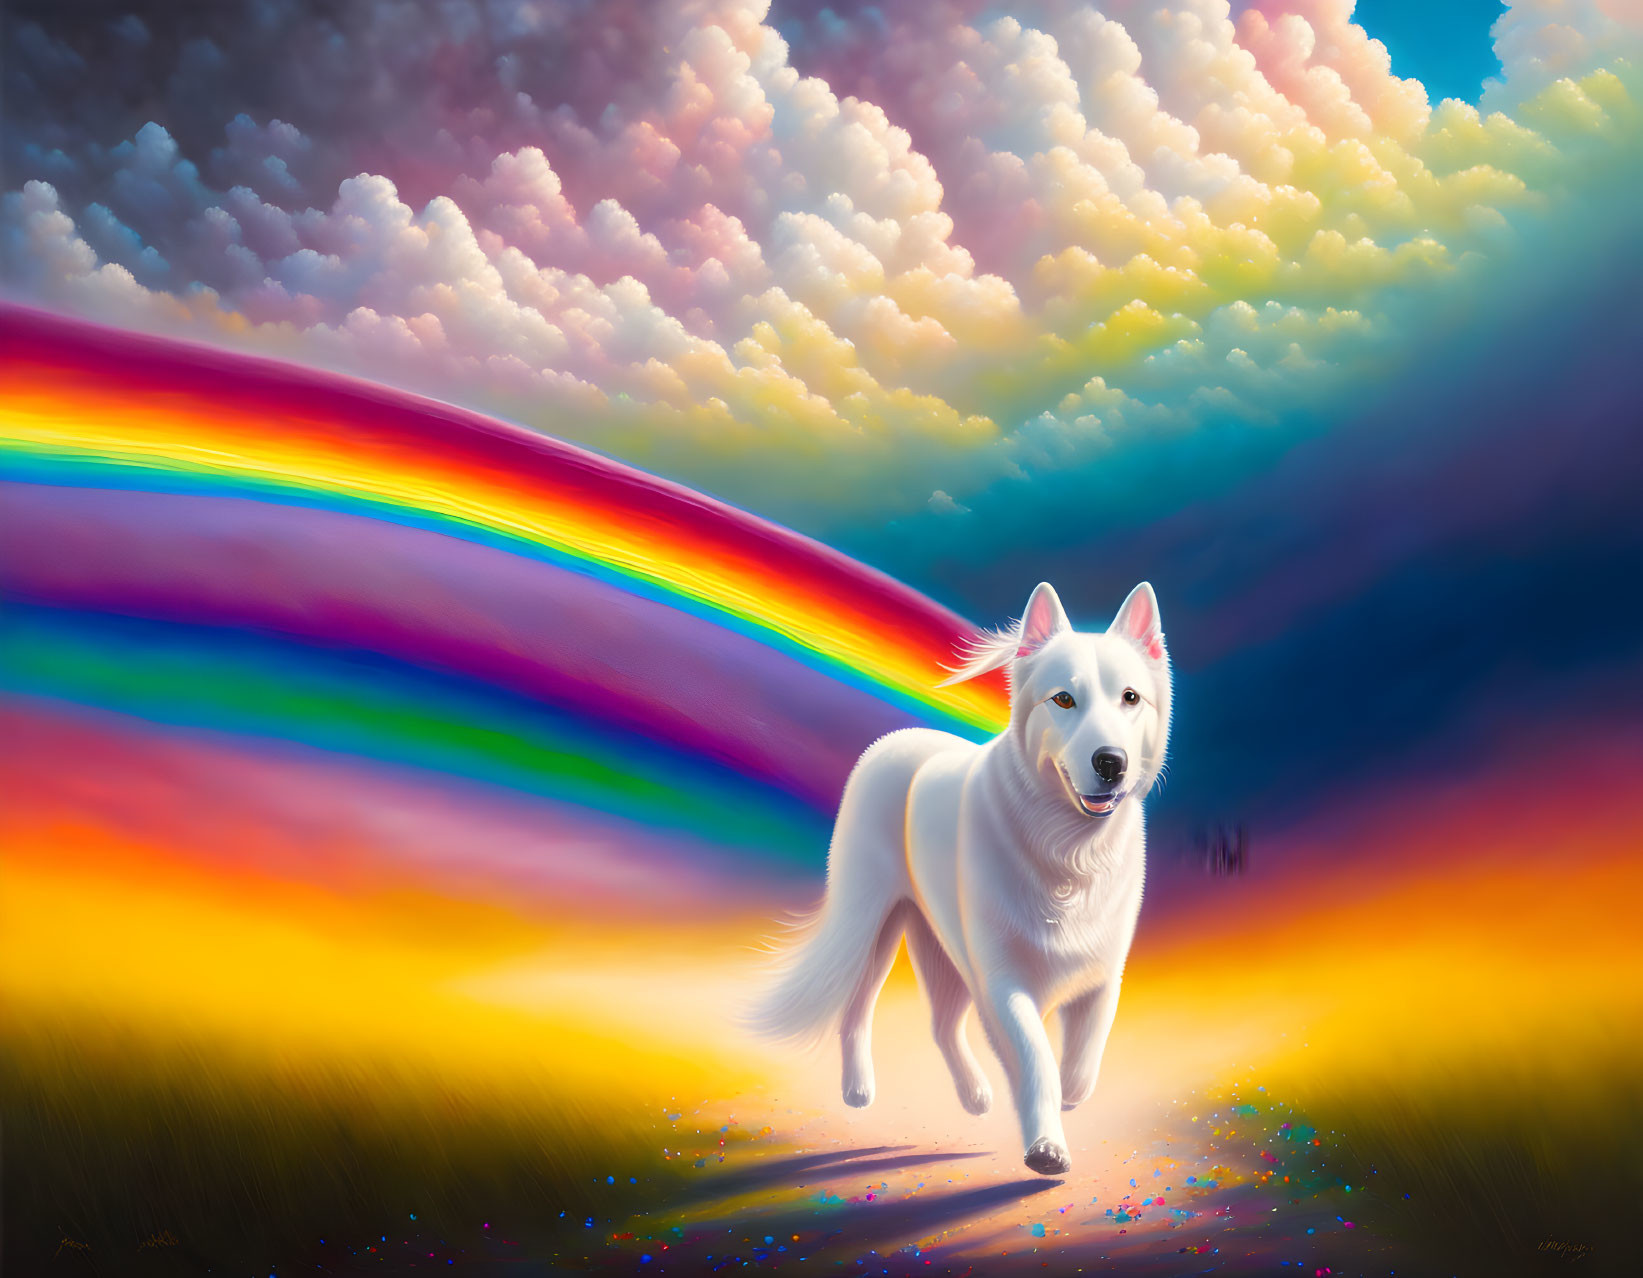 White Dog Walking on Vibrant Rainbow Landscape